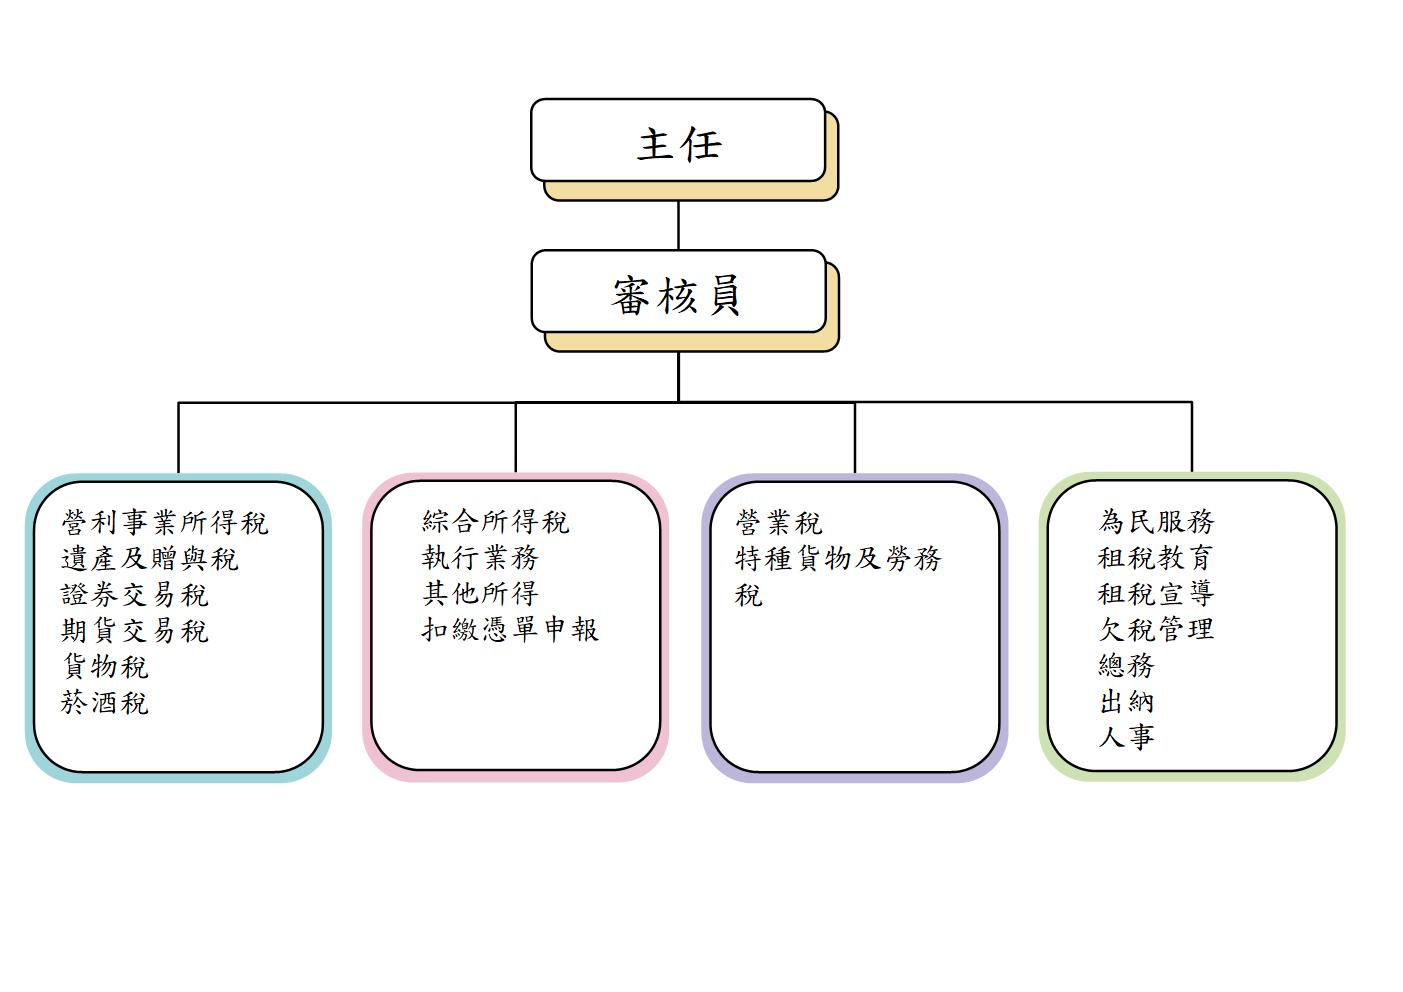 馬祖服務處組織架構圖